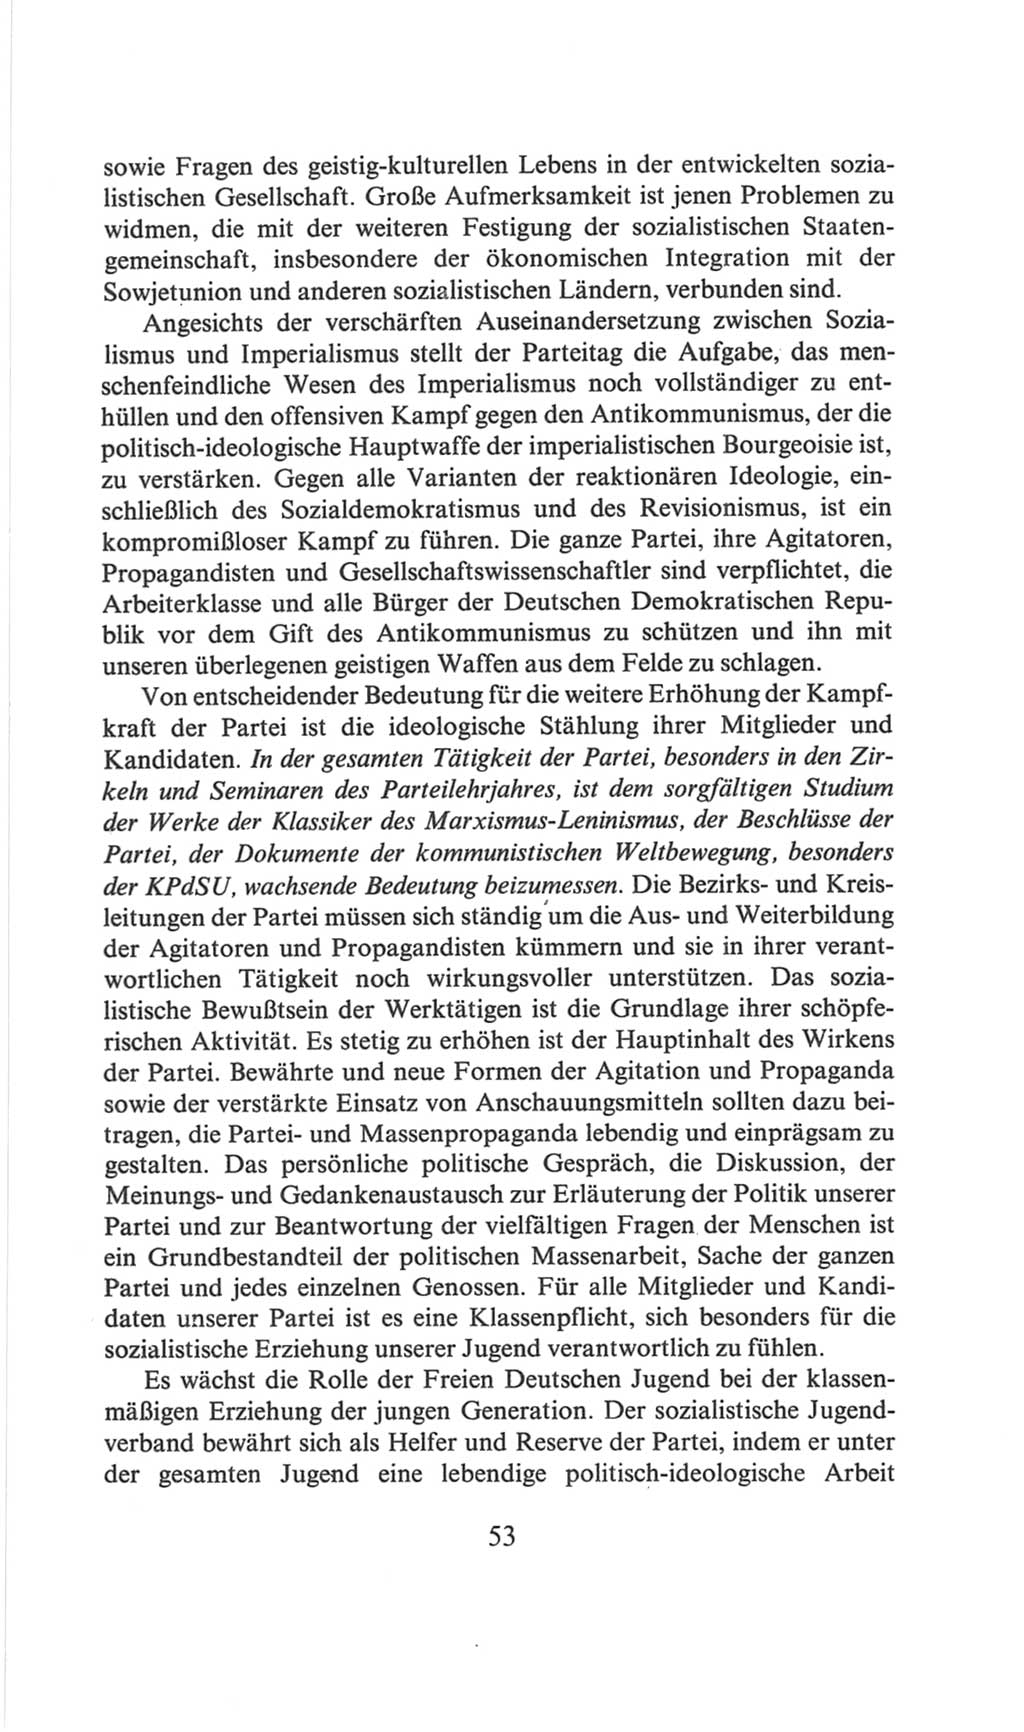 Volkskammer (VK) der Deutschen Demokratischen Republik (DDR), 6. Wahlperiode 1971-1976, Seite 53 (VK. DDR 6. WP. 1971-1976, S. 53)